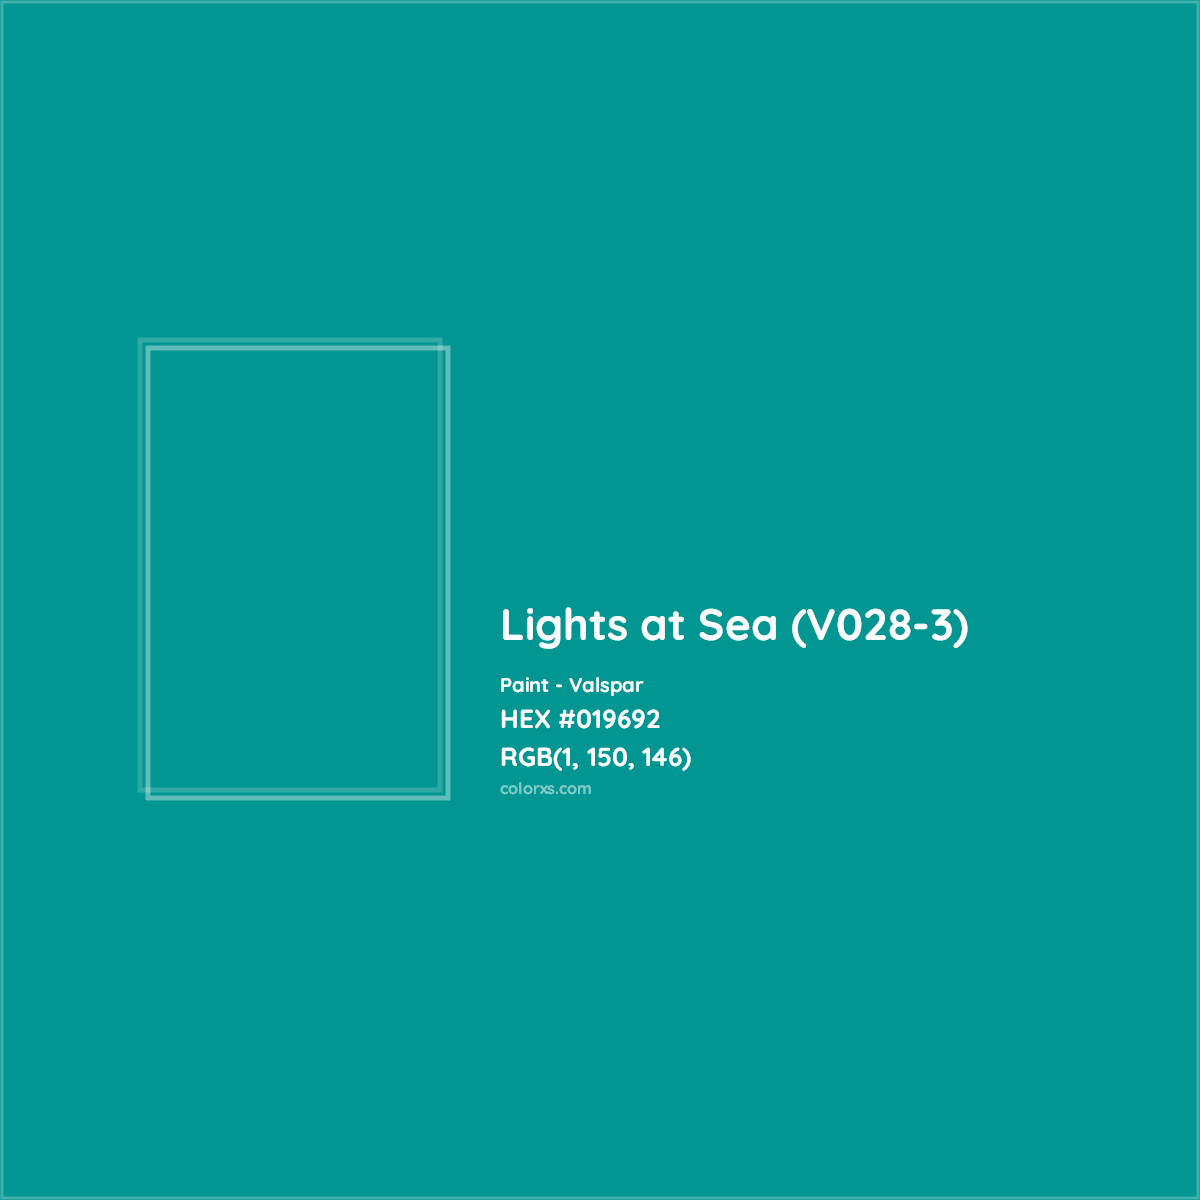 HEX #019692 Lights at Sea (V028-3) Paint Valspar - Color Code